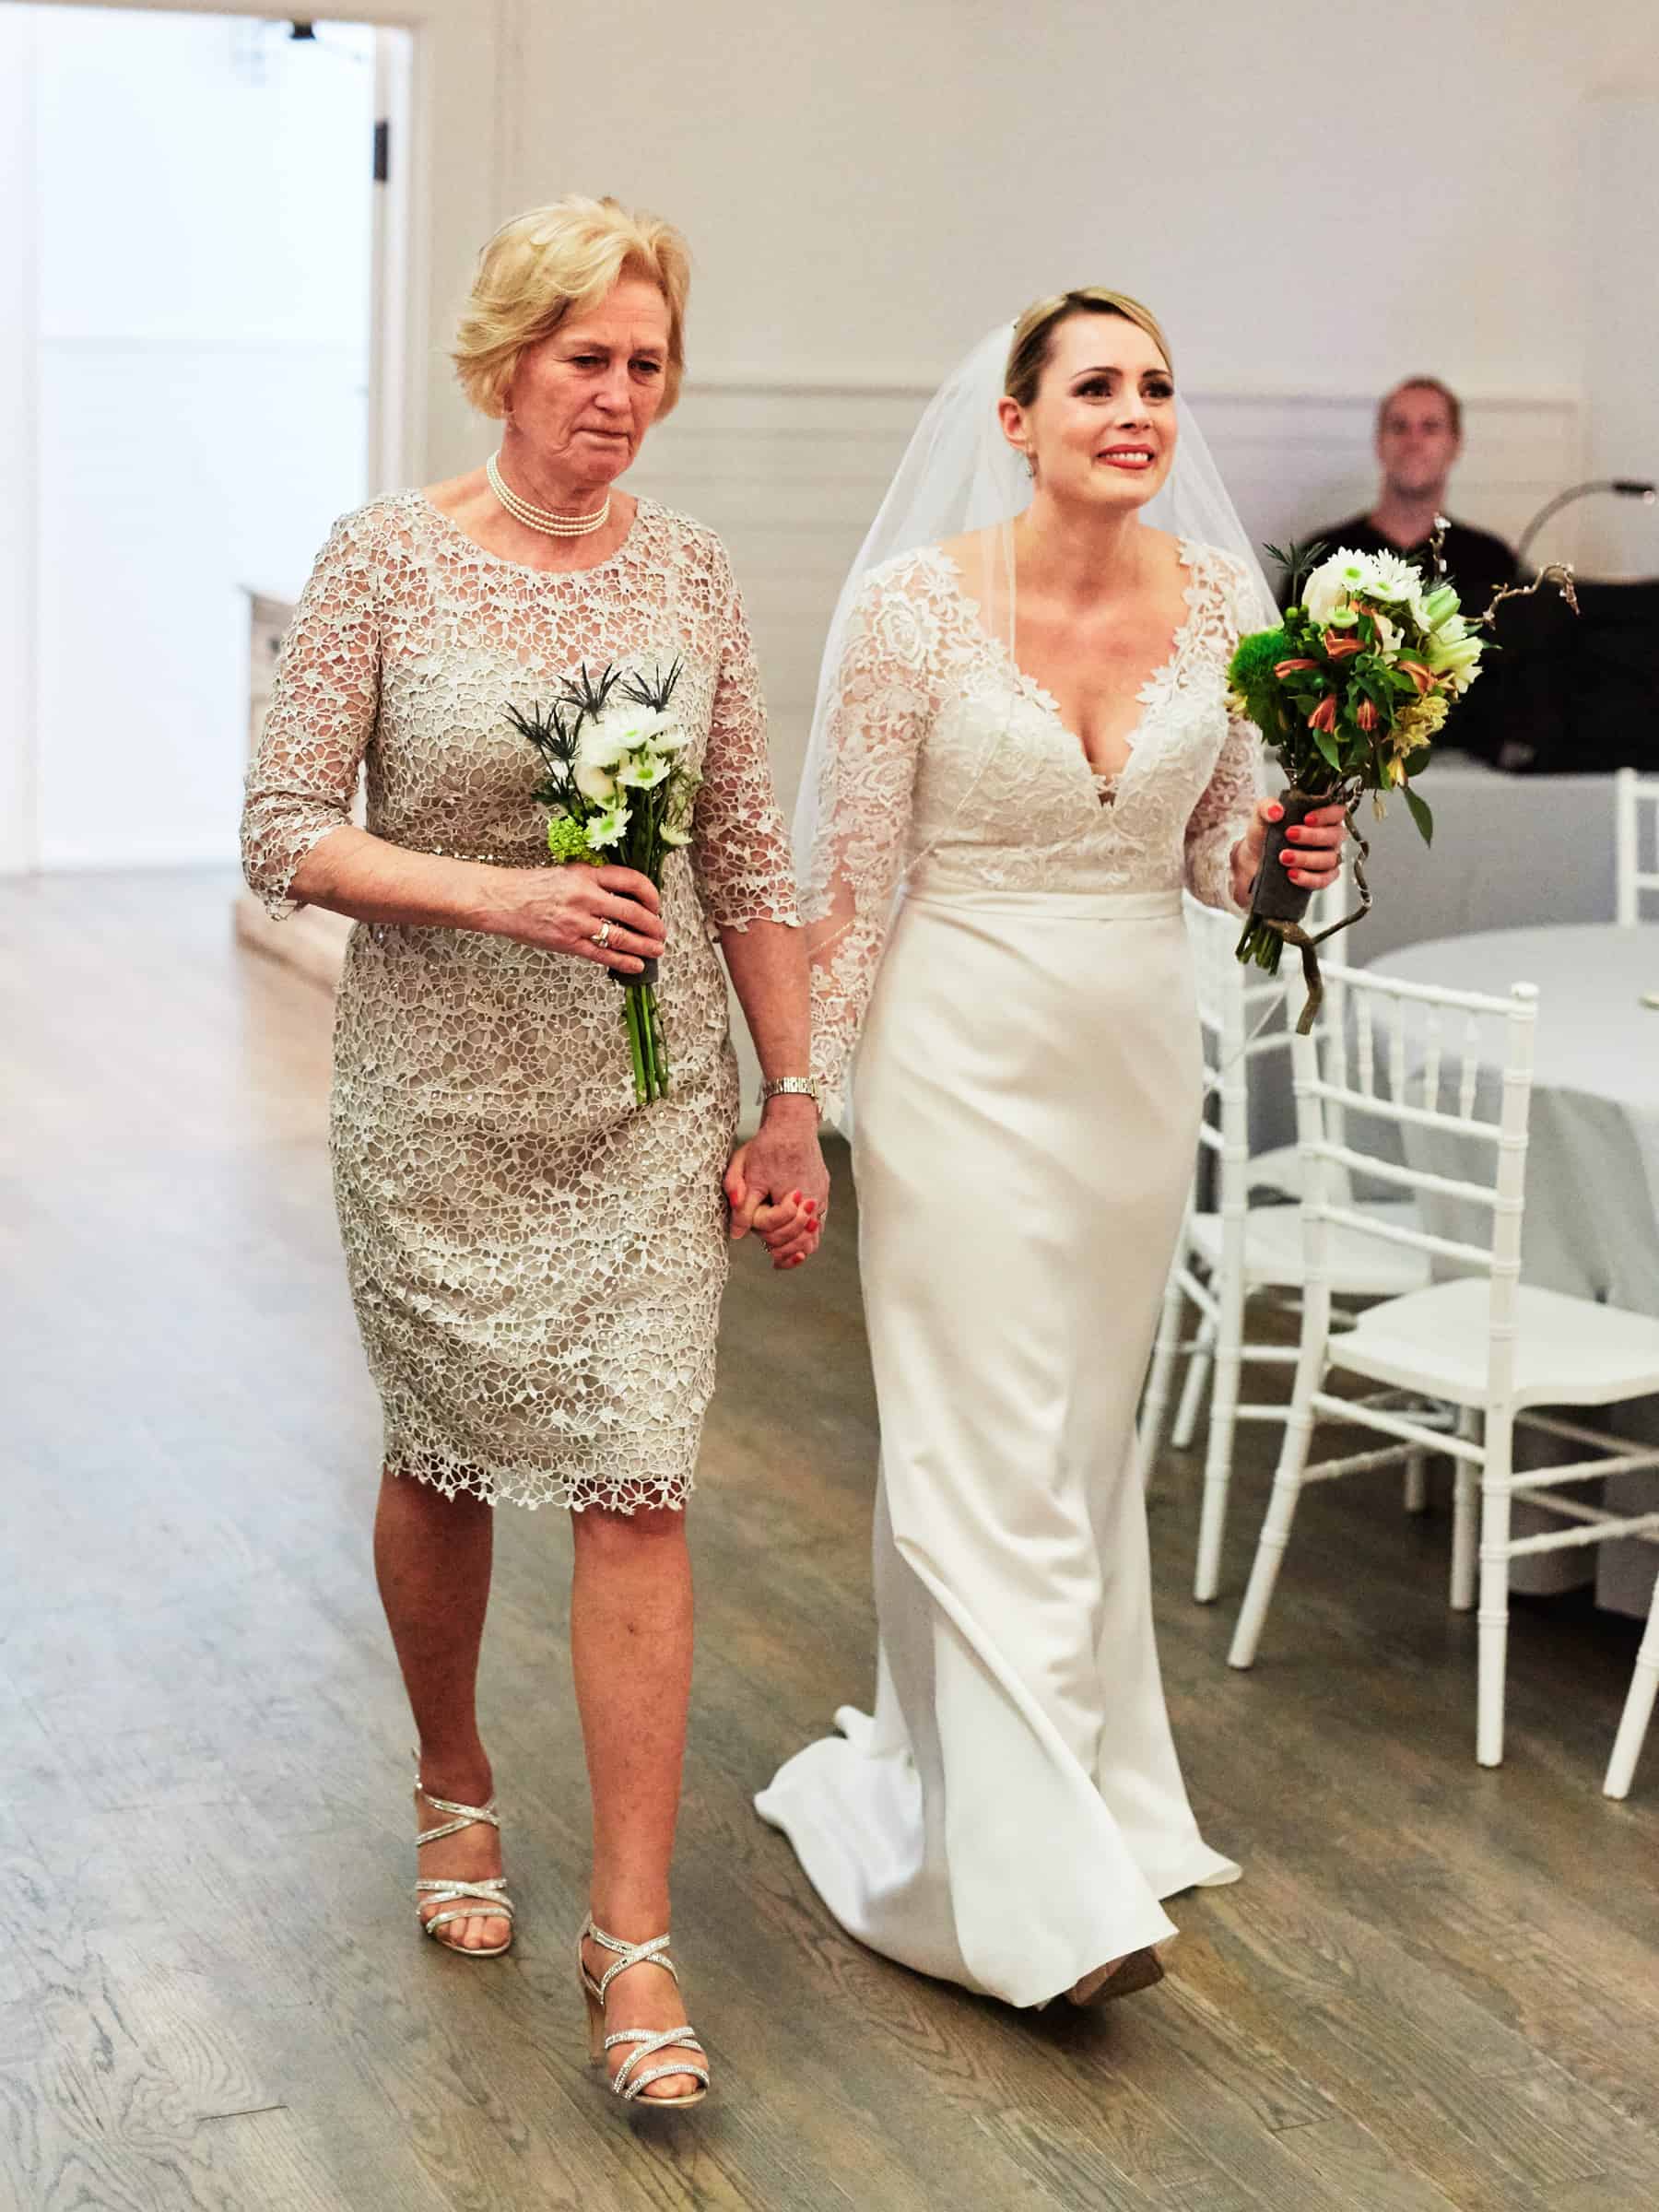 mom walking bride down aisle